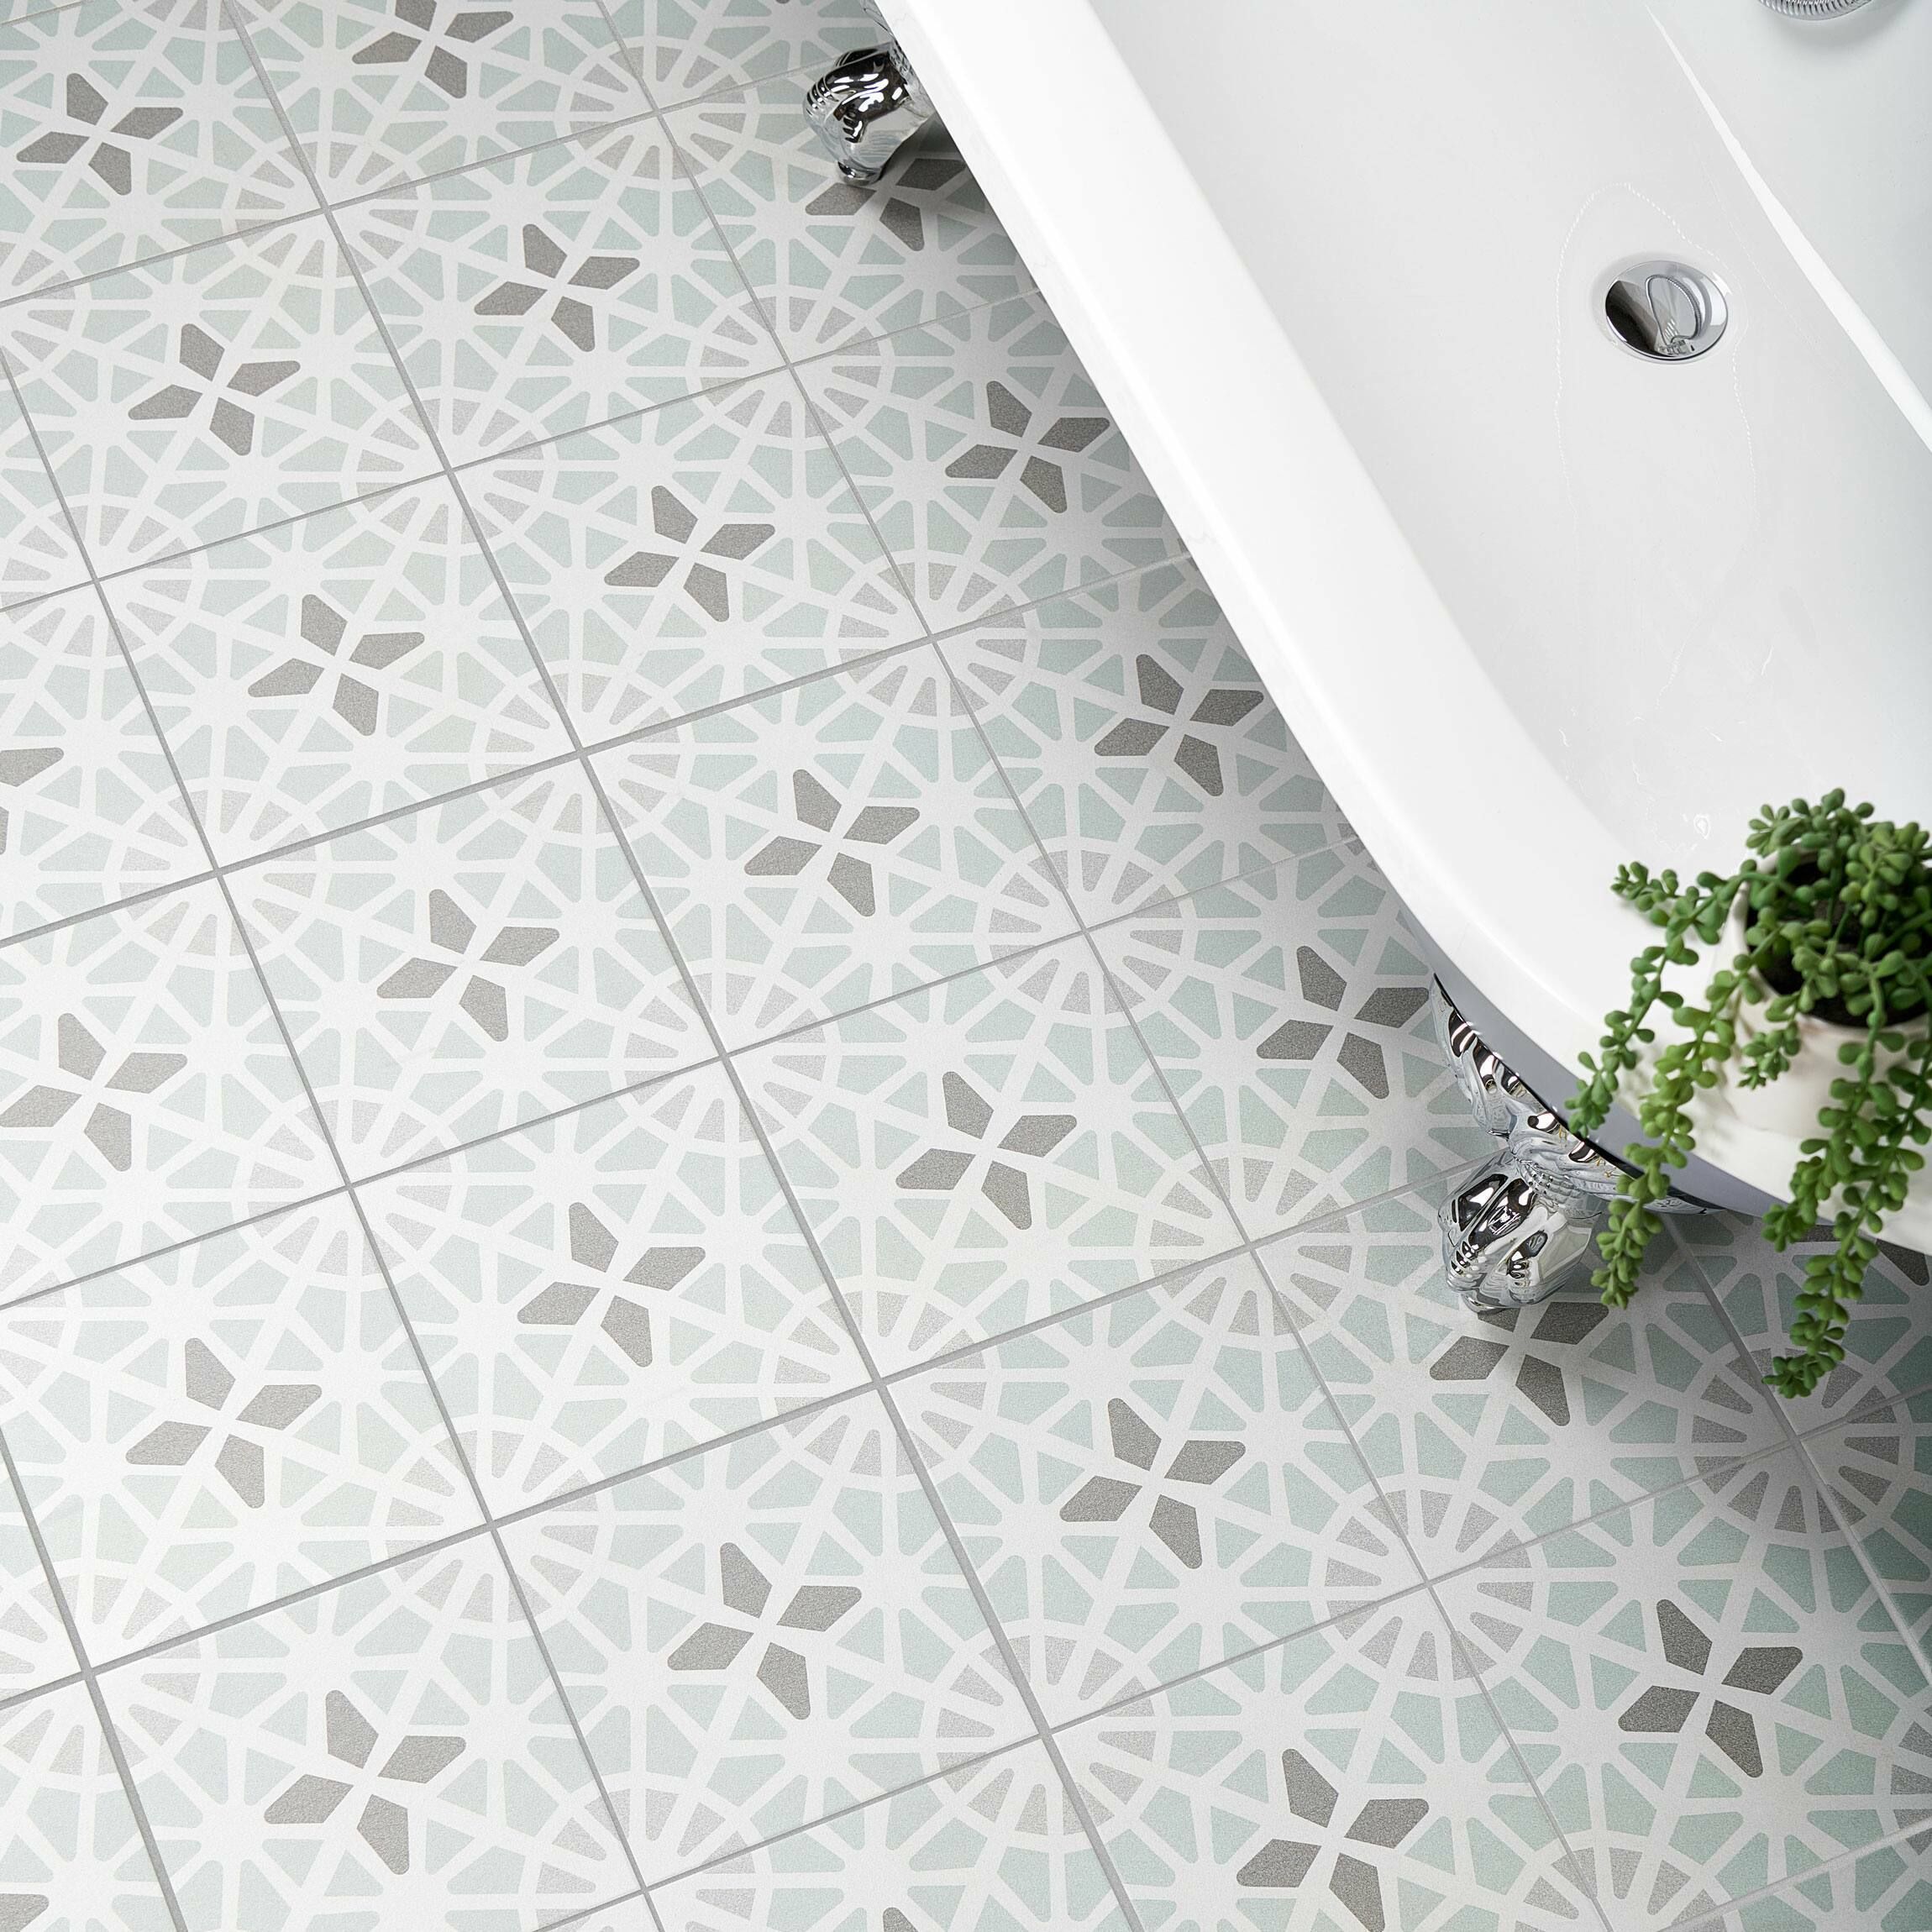 Adele Green Sea Floor Tile Tiles From, Tile For Bathroom Floors